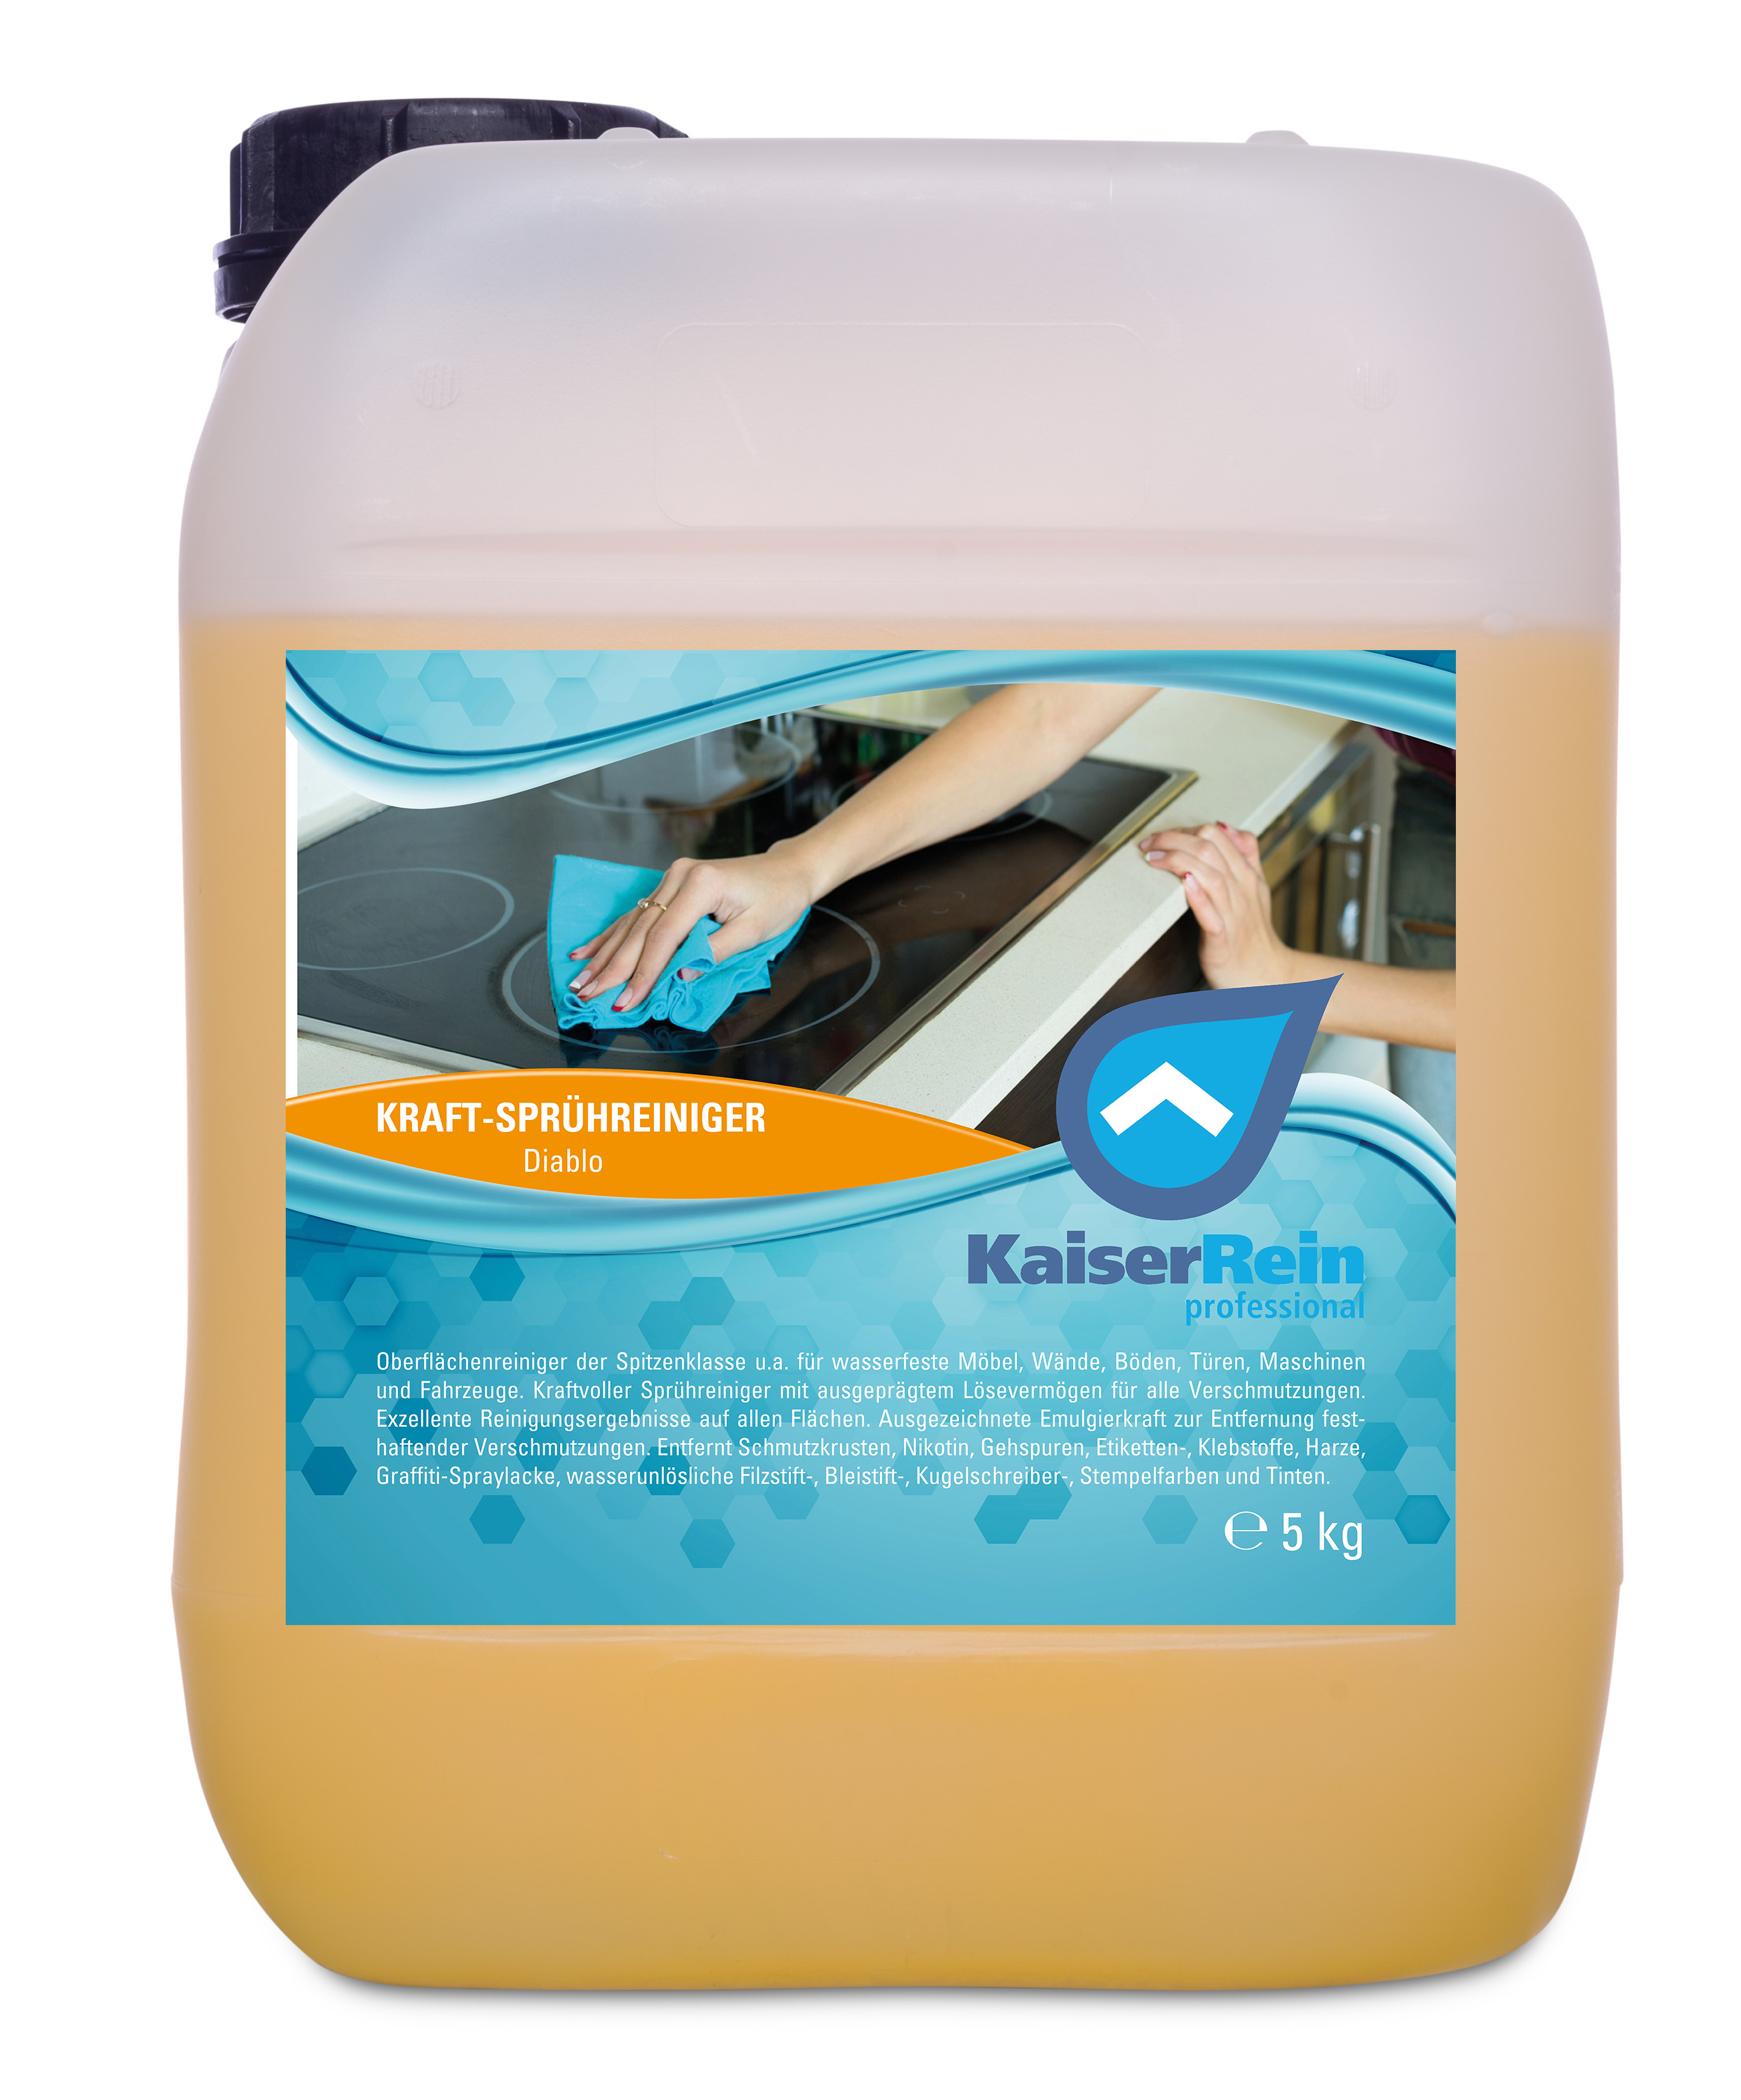 KaiserRein Kraftreiniger Diablo Spray gelb 5 l (5000 ml) für Haushalt und Gewerbe